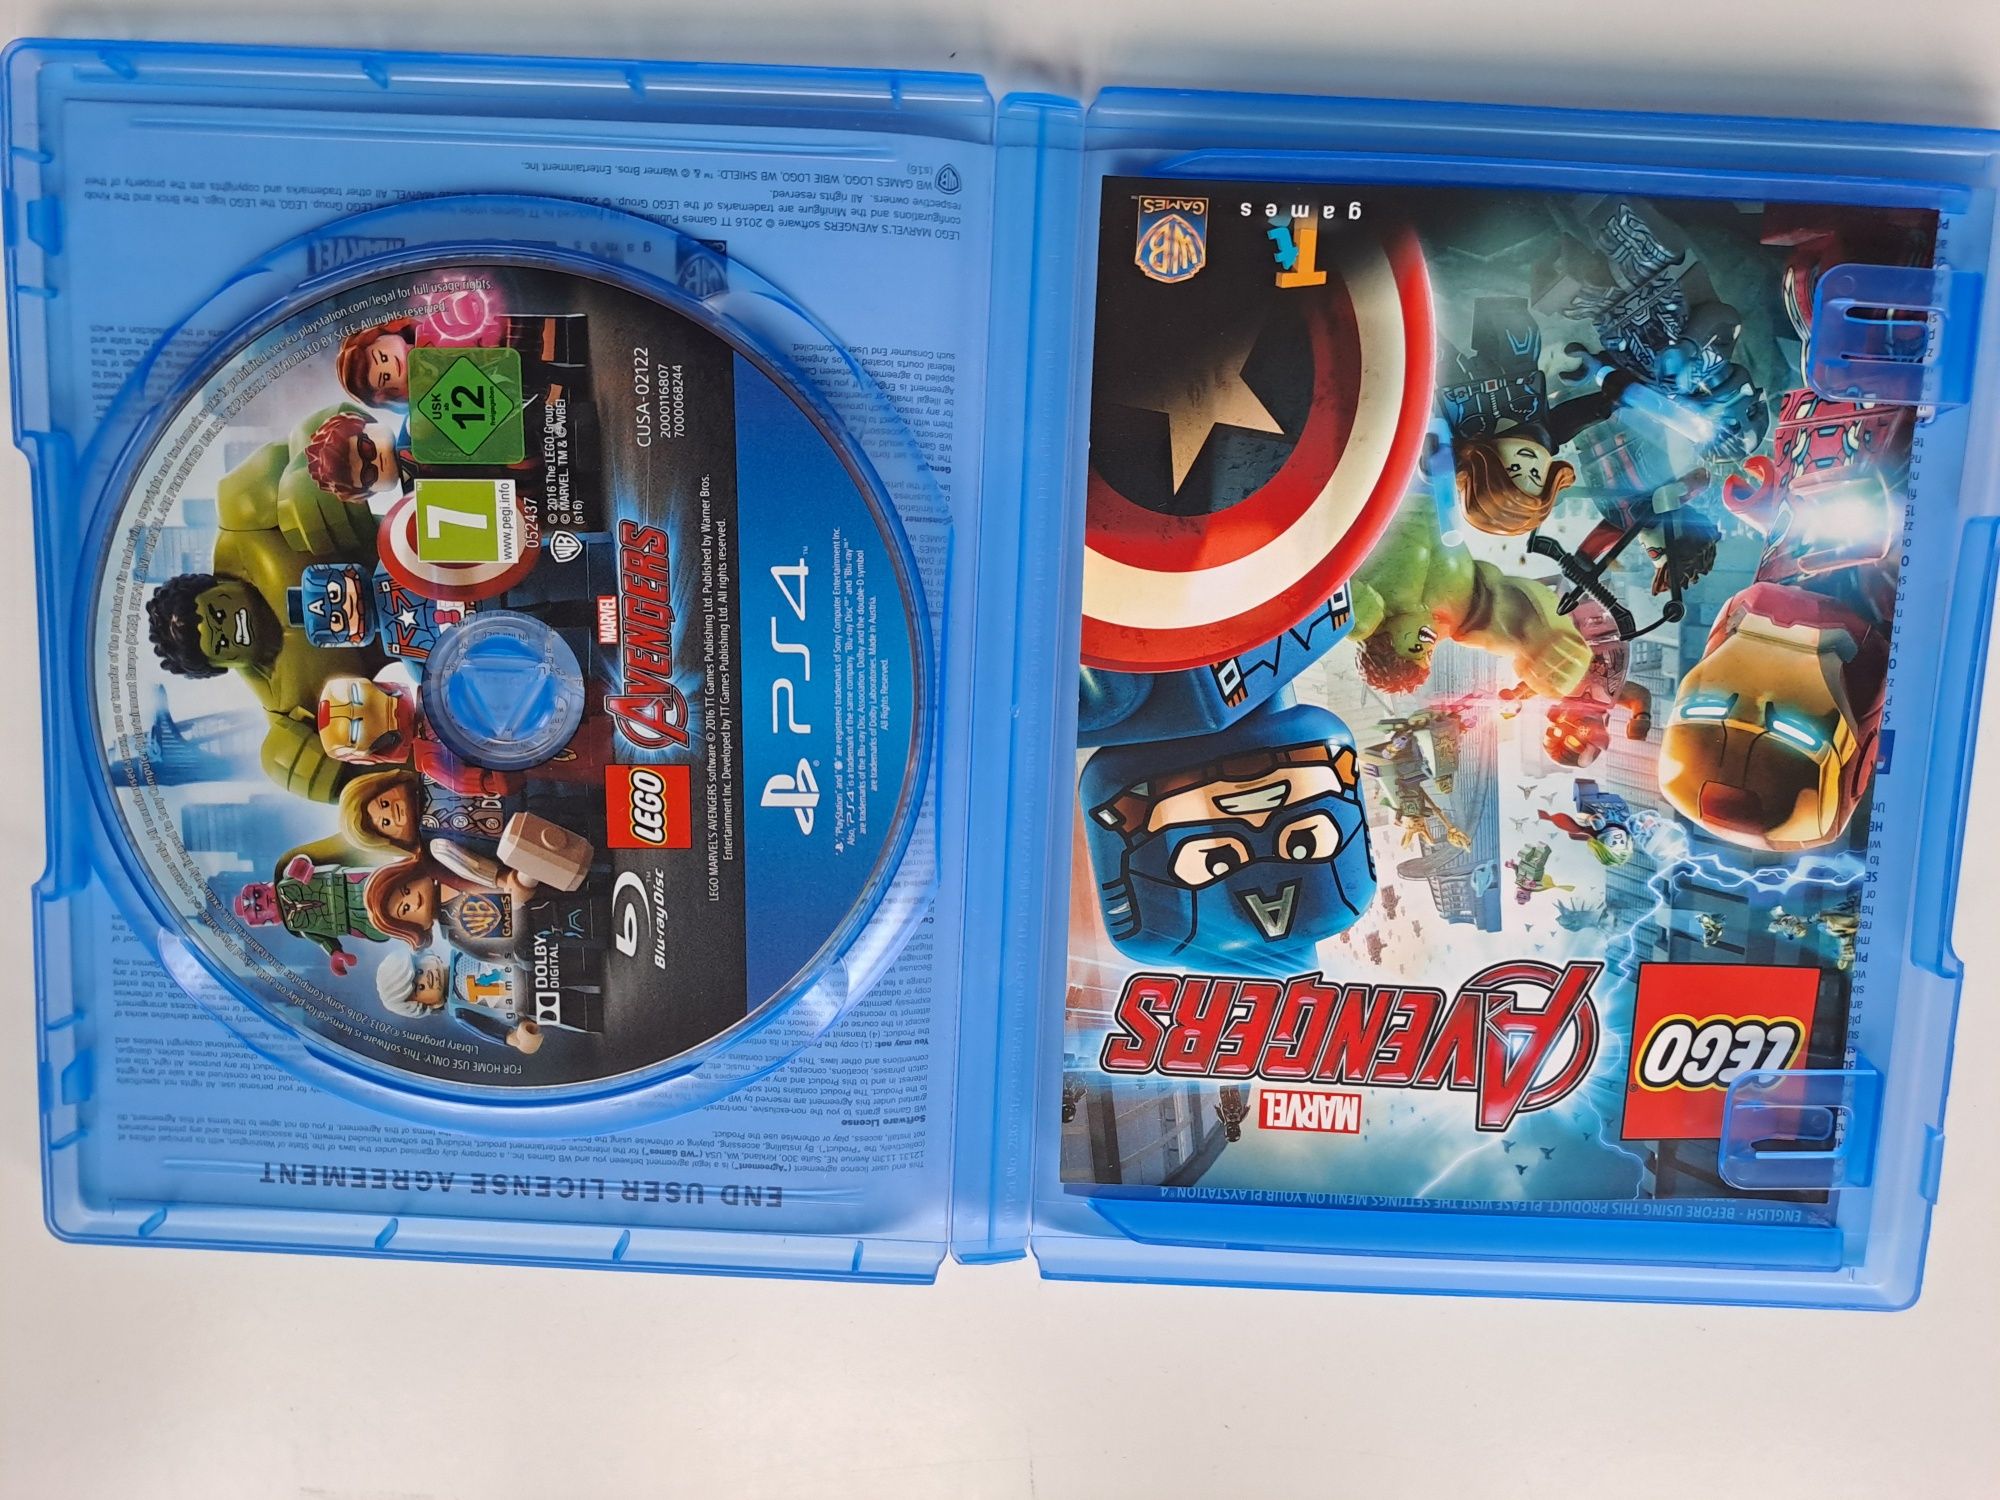 PS4 gra Lego Marvel Avengers